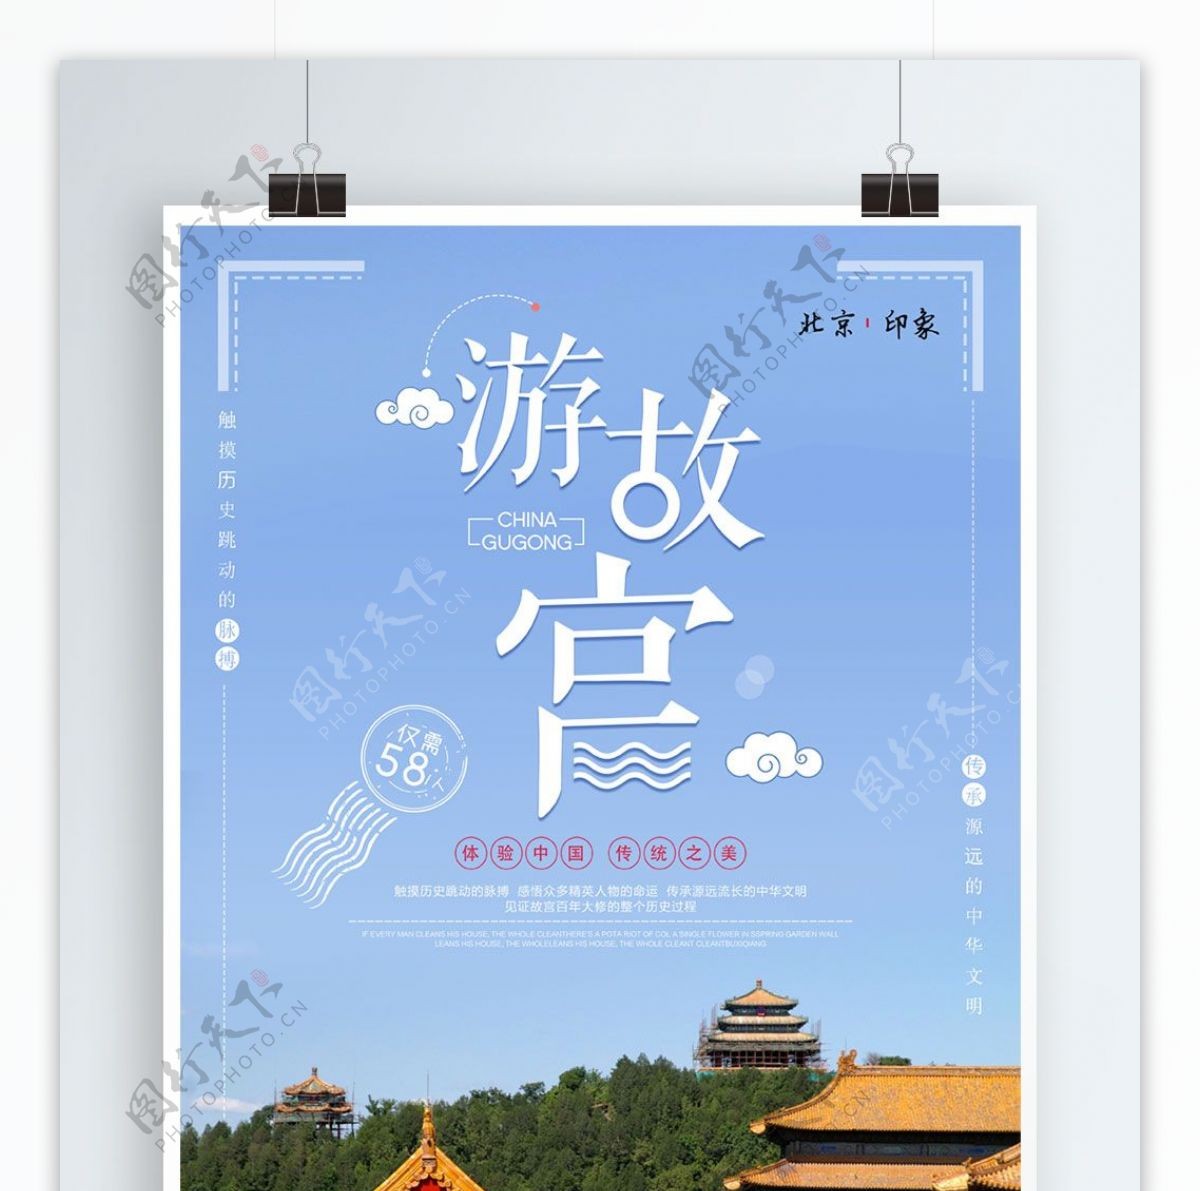 创意故宫旅游宣传促销海报设计